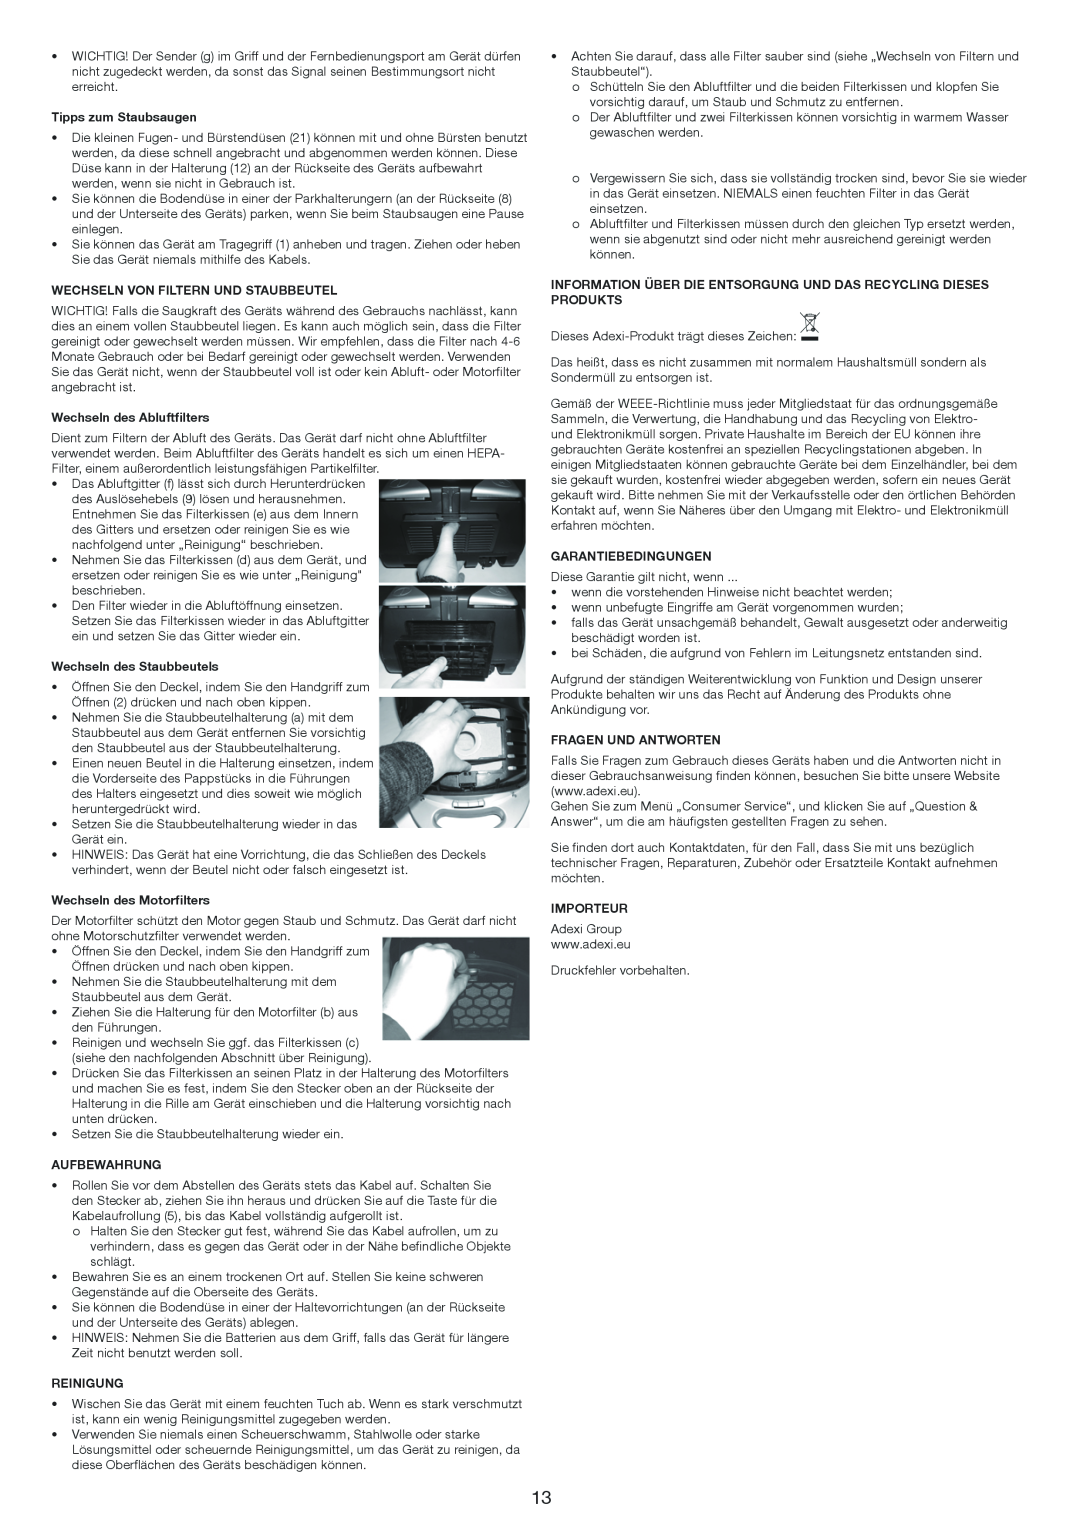 Melissa 640-174 manual Tipps zum Staubsaugen 